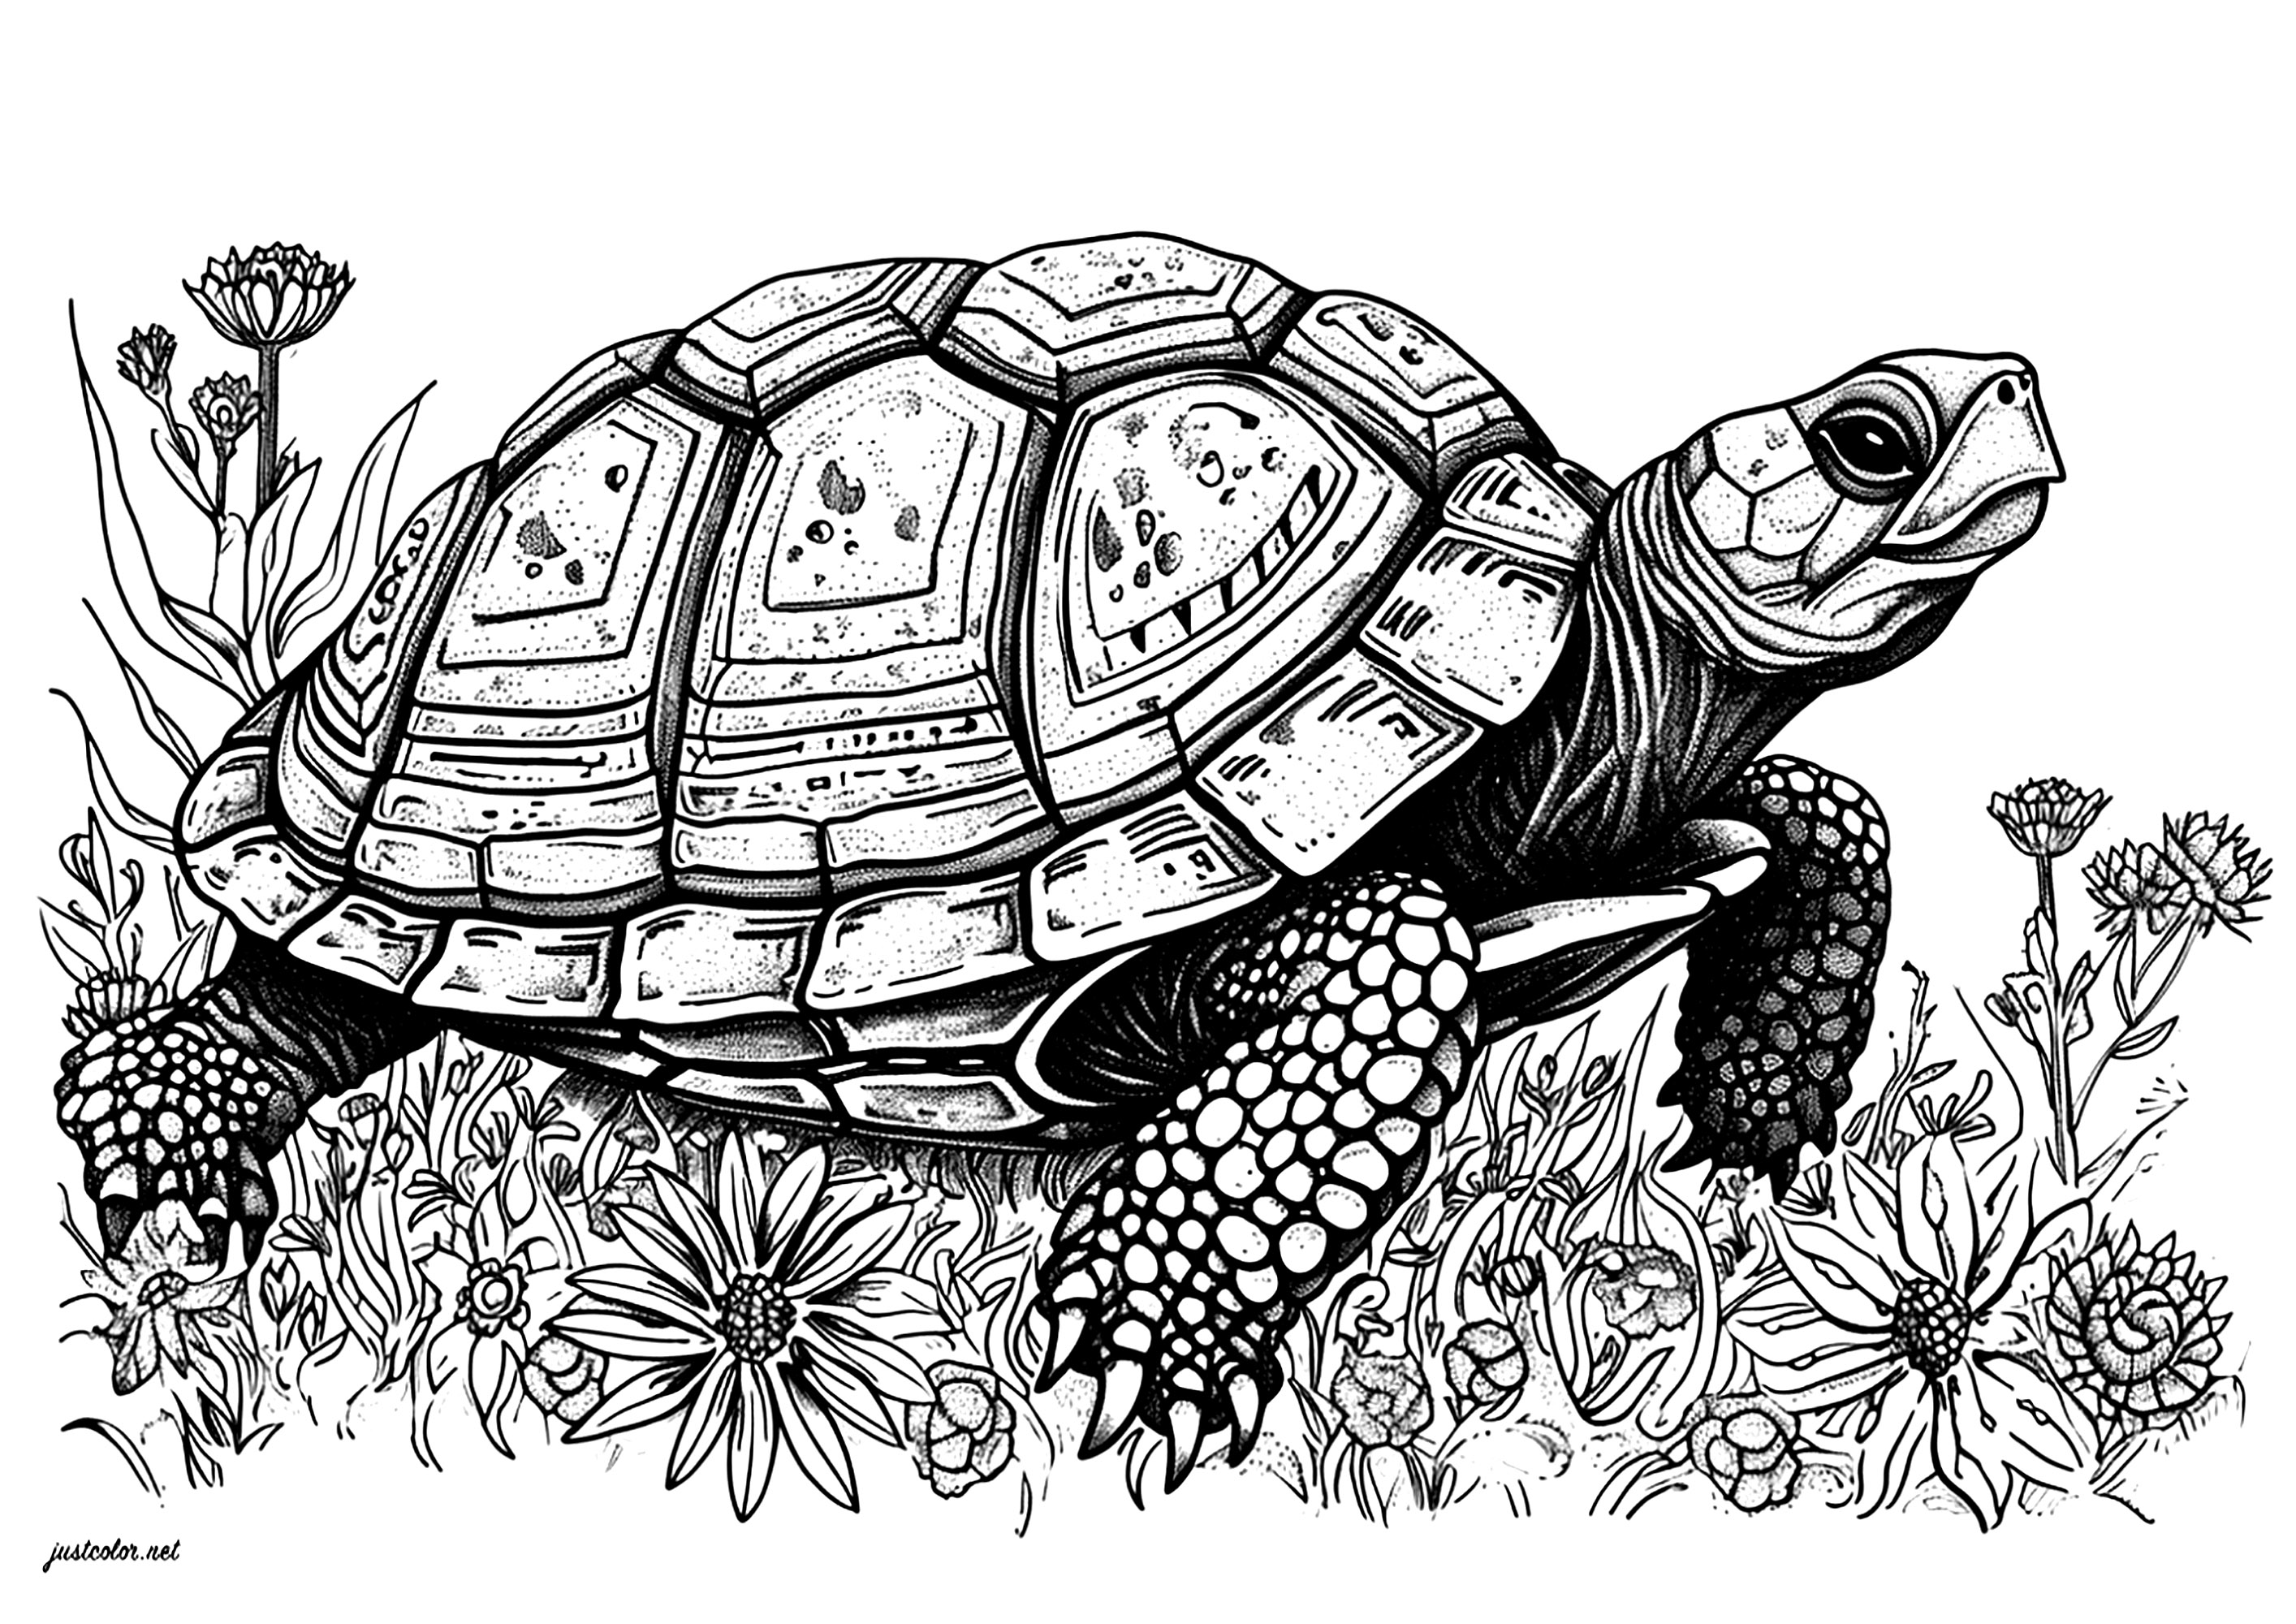 Eine schöne Schildkröte, die sich langsam durch schöne Blumen bewegt